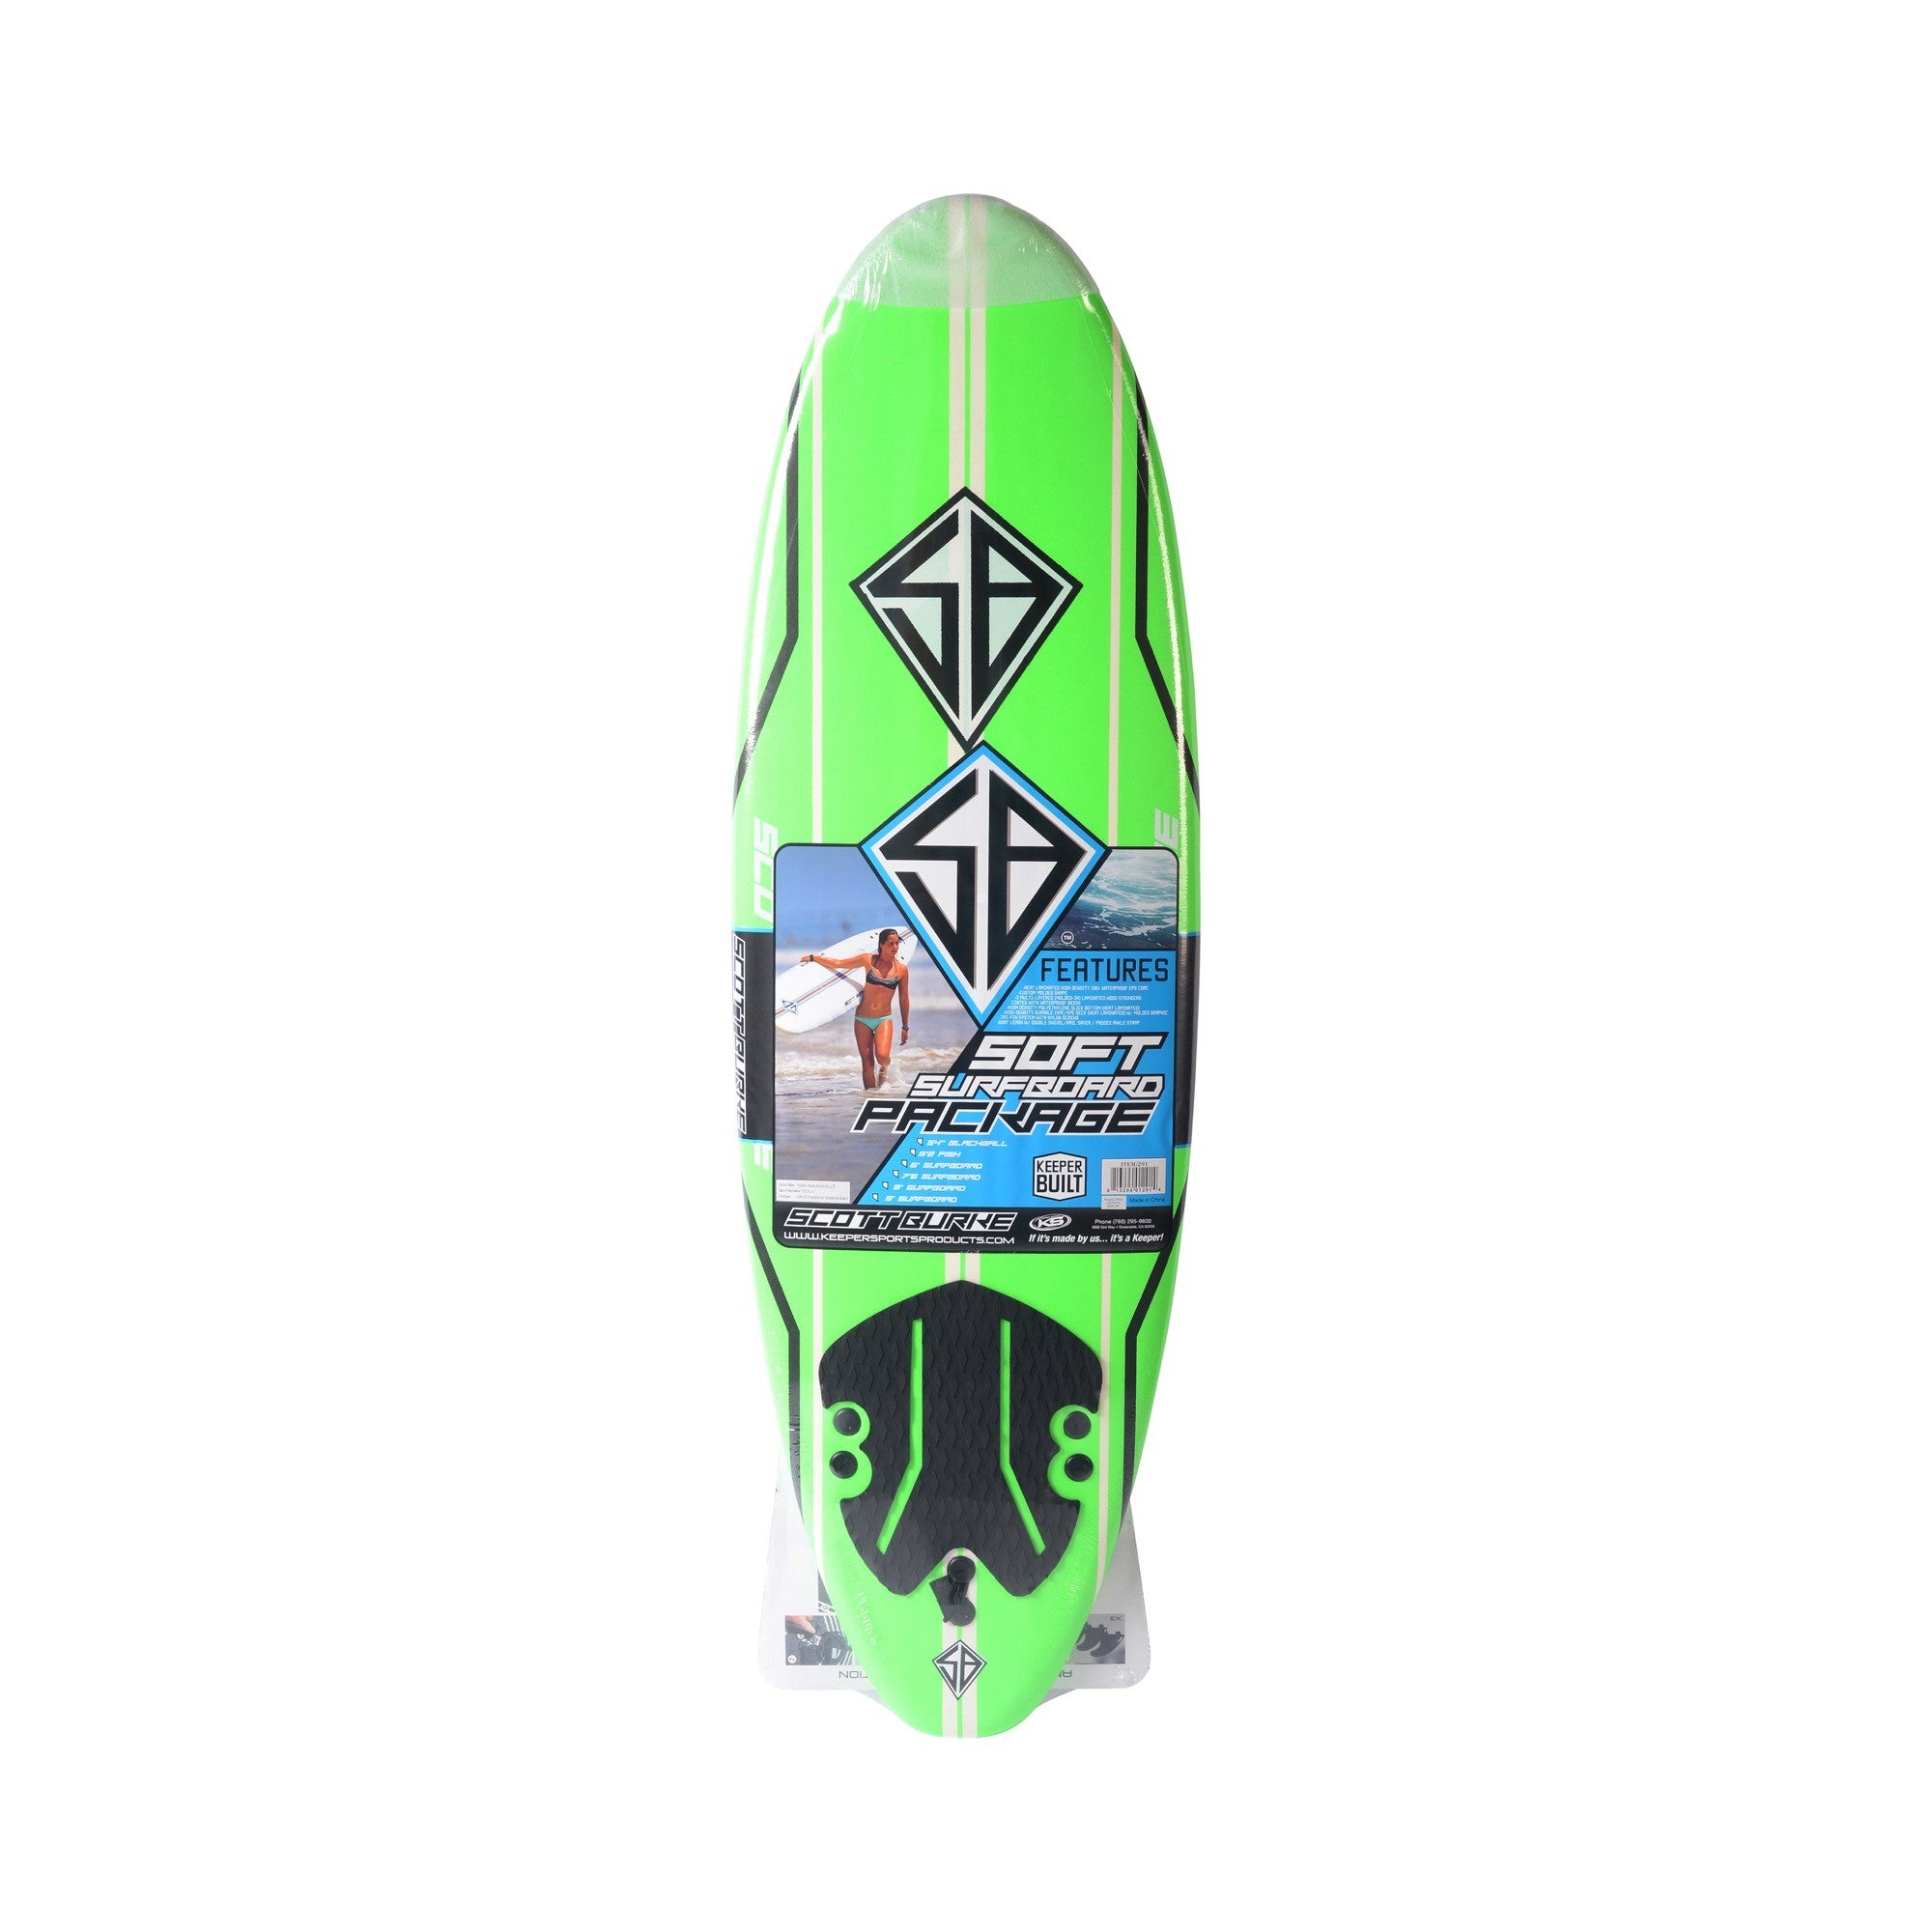 CBC - Planche de Surf en mousse - Softboard 6'0 Scott Burke - Neon Green